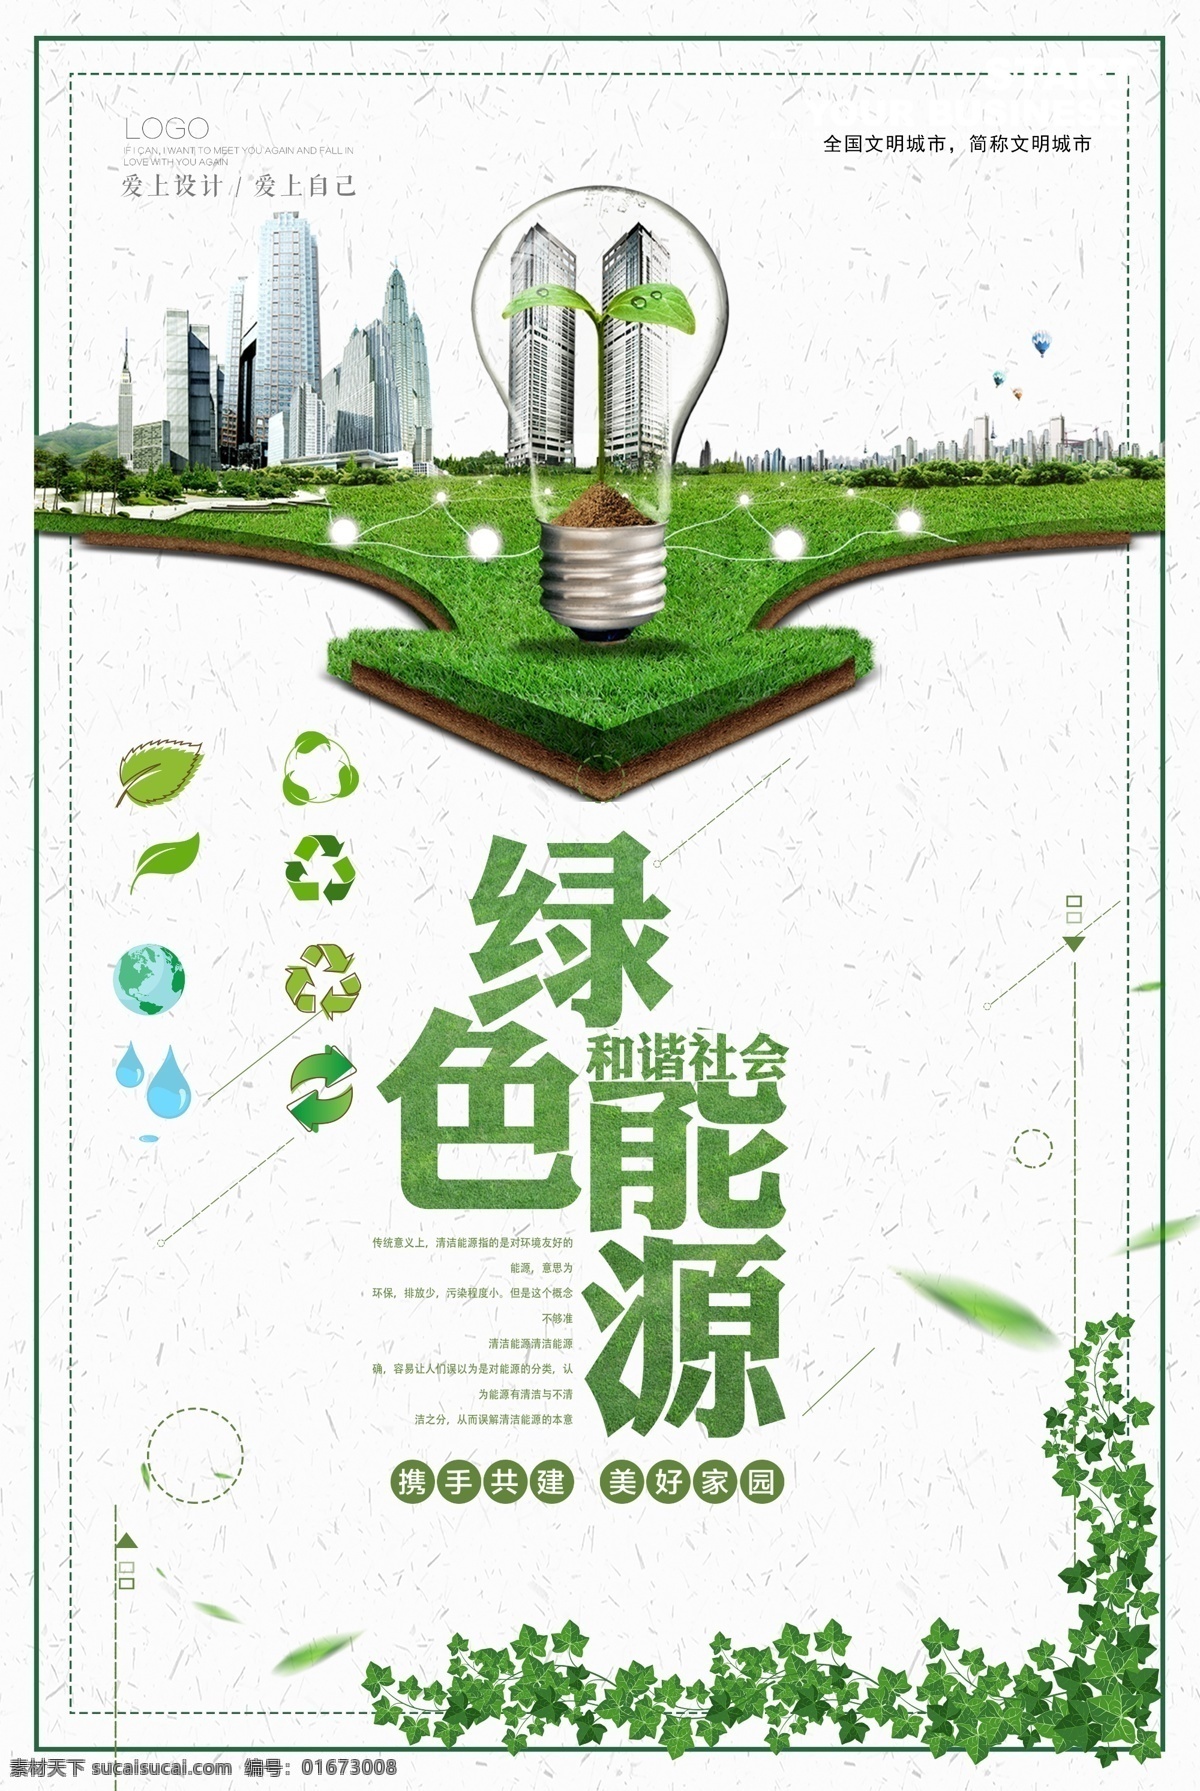 绿色能源海报 绿色能源 新能源 爱护环境 禁止污染 文明城市 绿色城市 分层